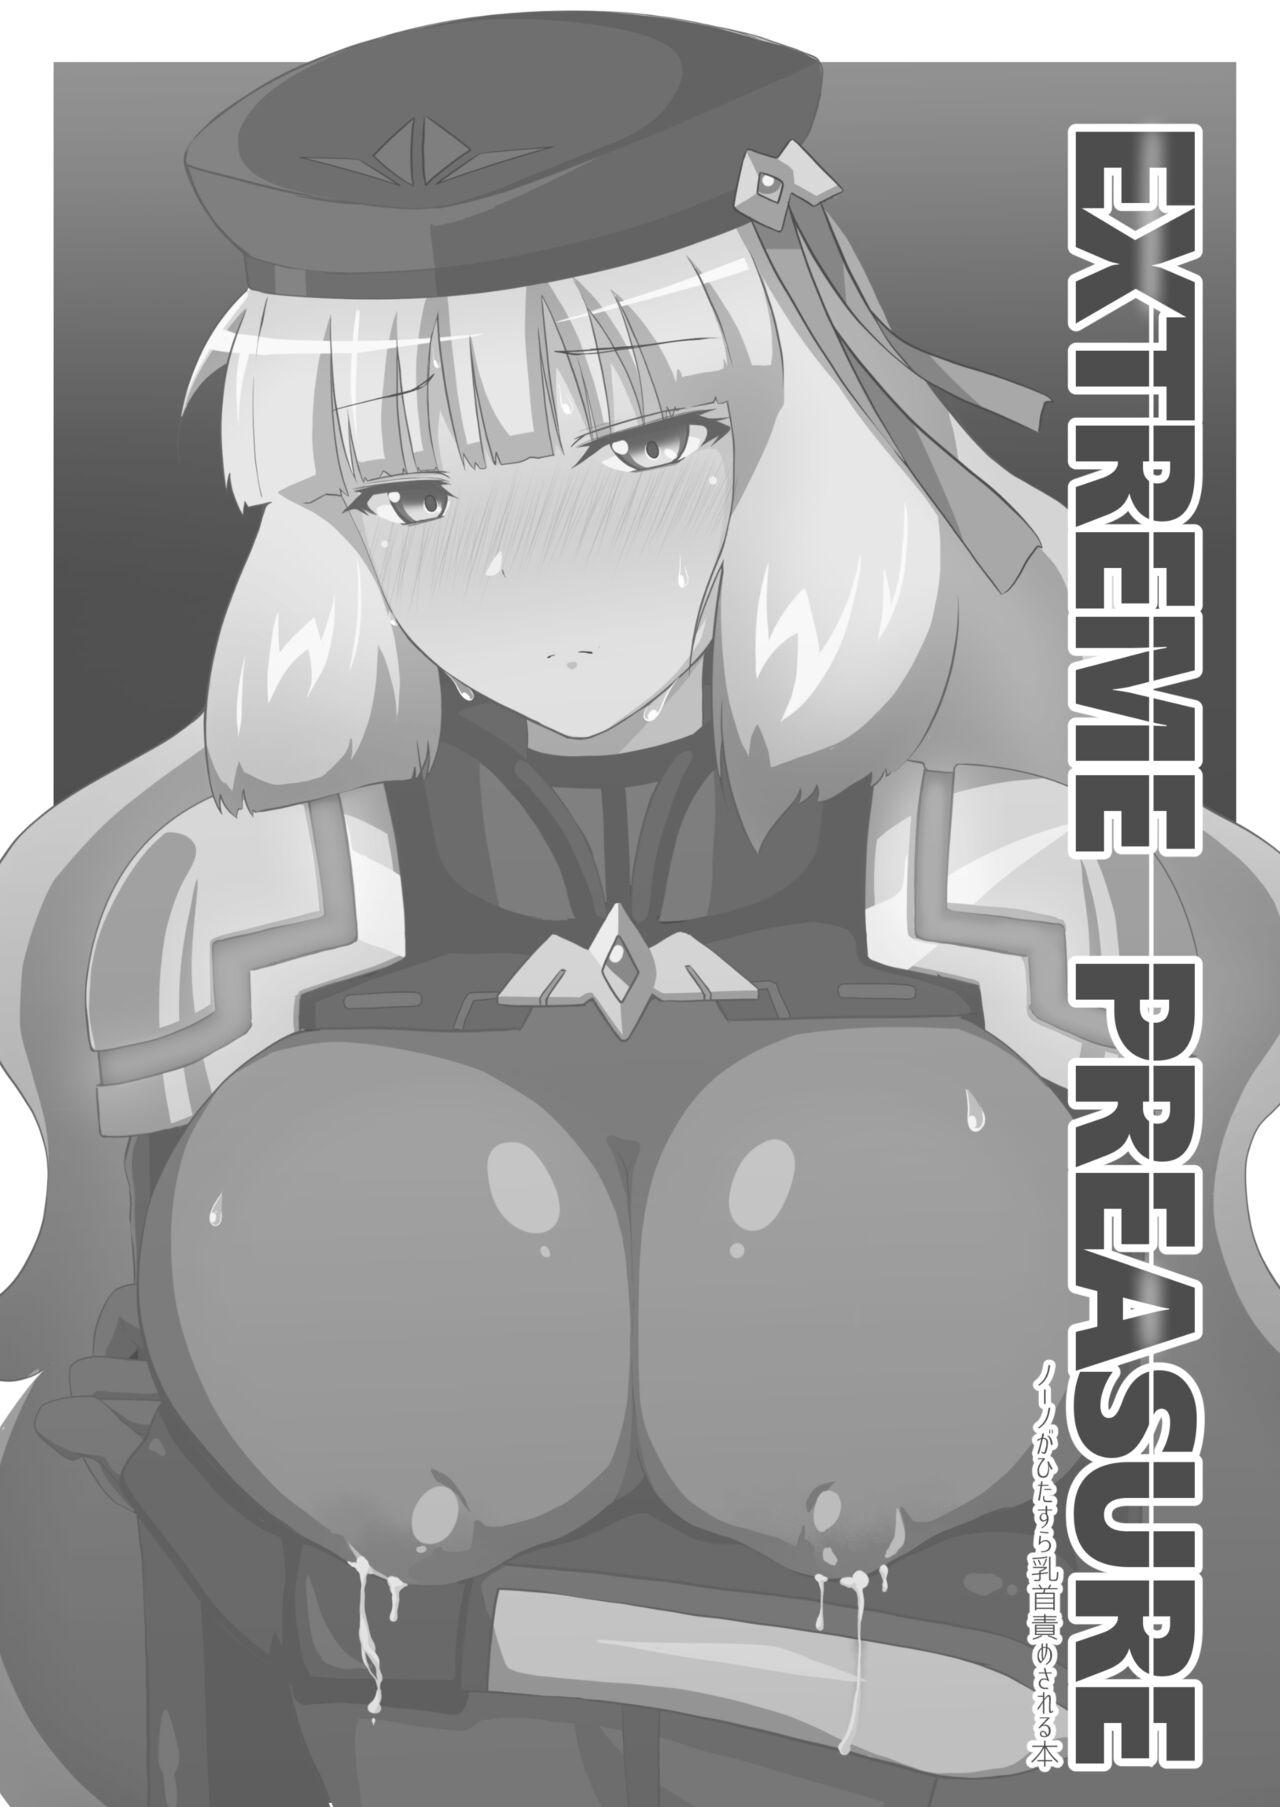 Rough Sex EXTREME PREASURE - Gundam exa Desi - Picture 2